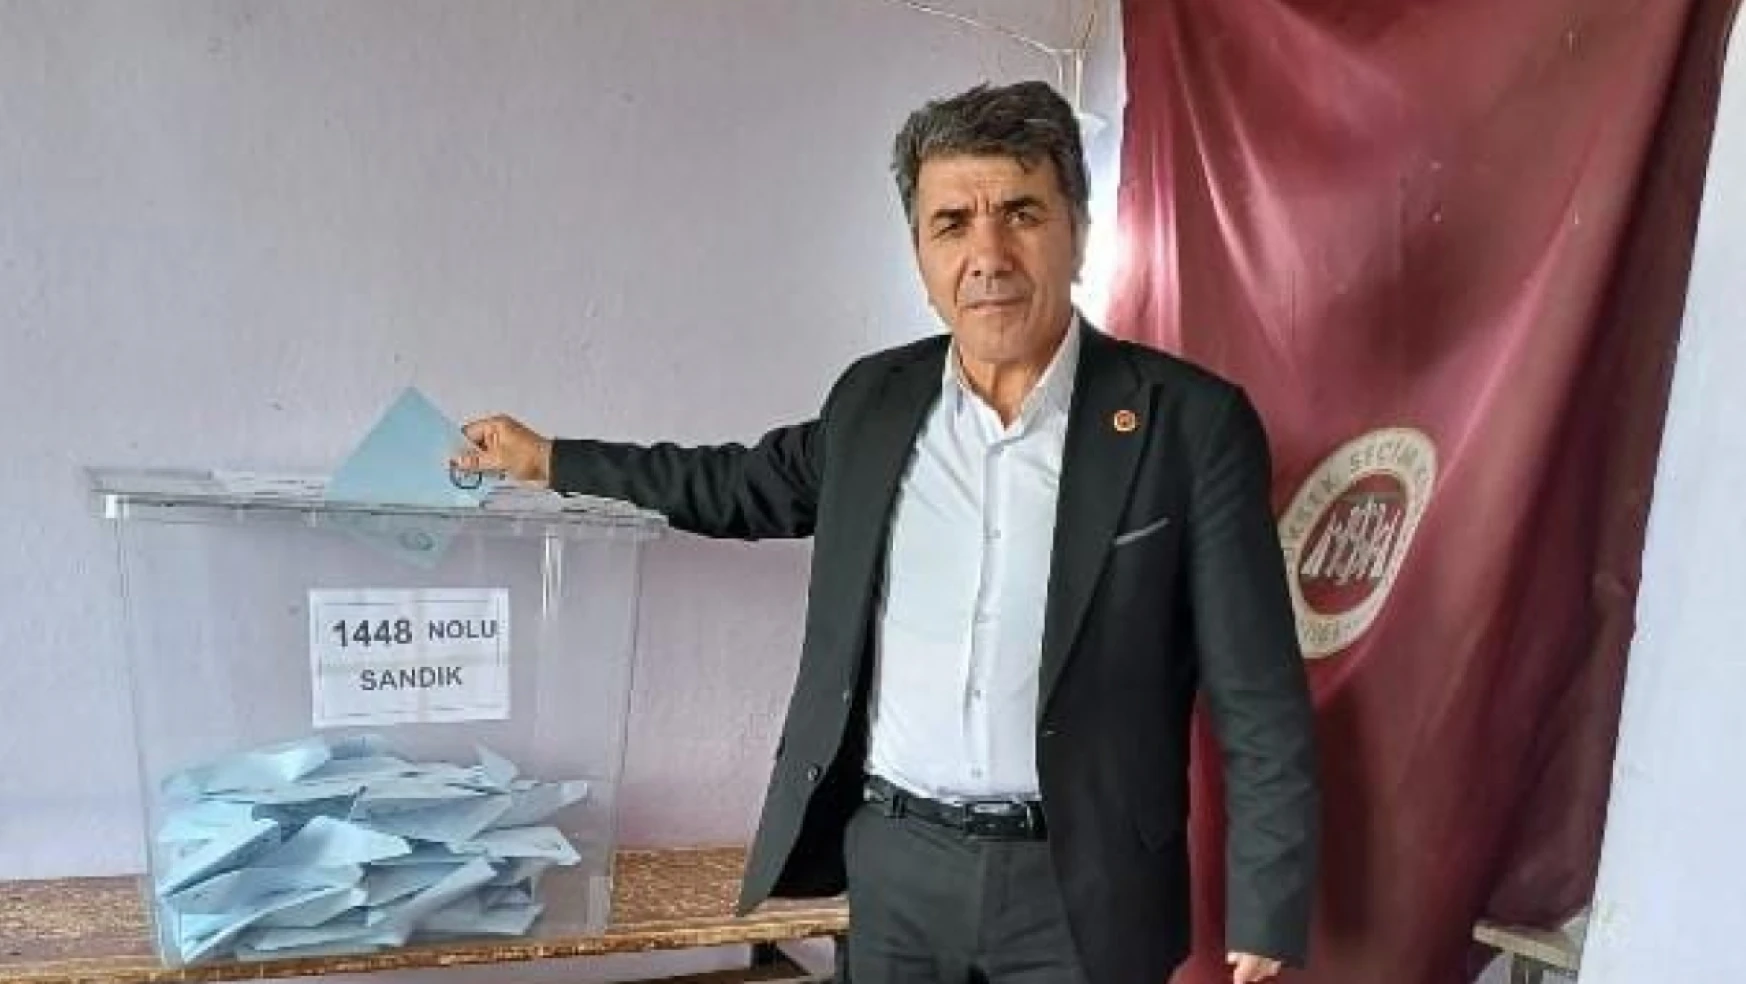 Elazığ'da 173 seçmenli köy muhtarı seçim bitmeden kazandığını ilan etti